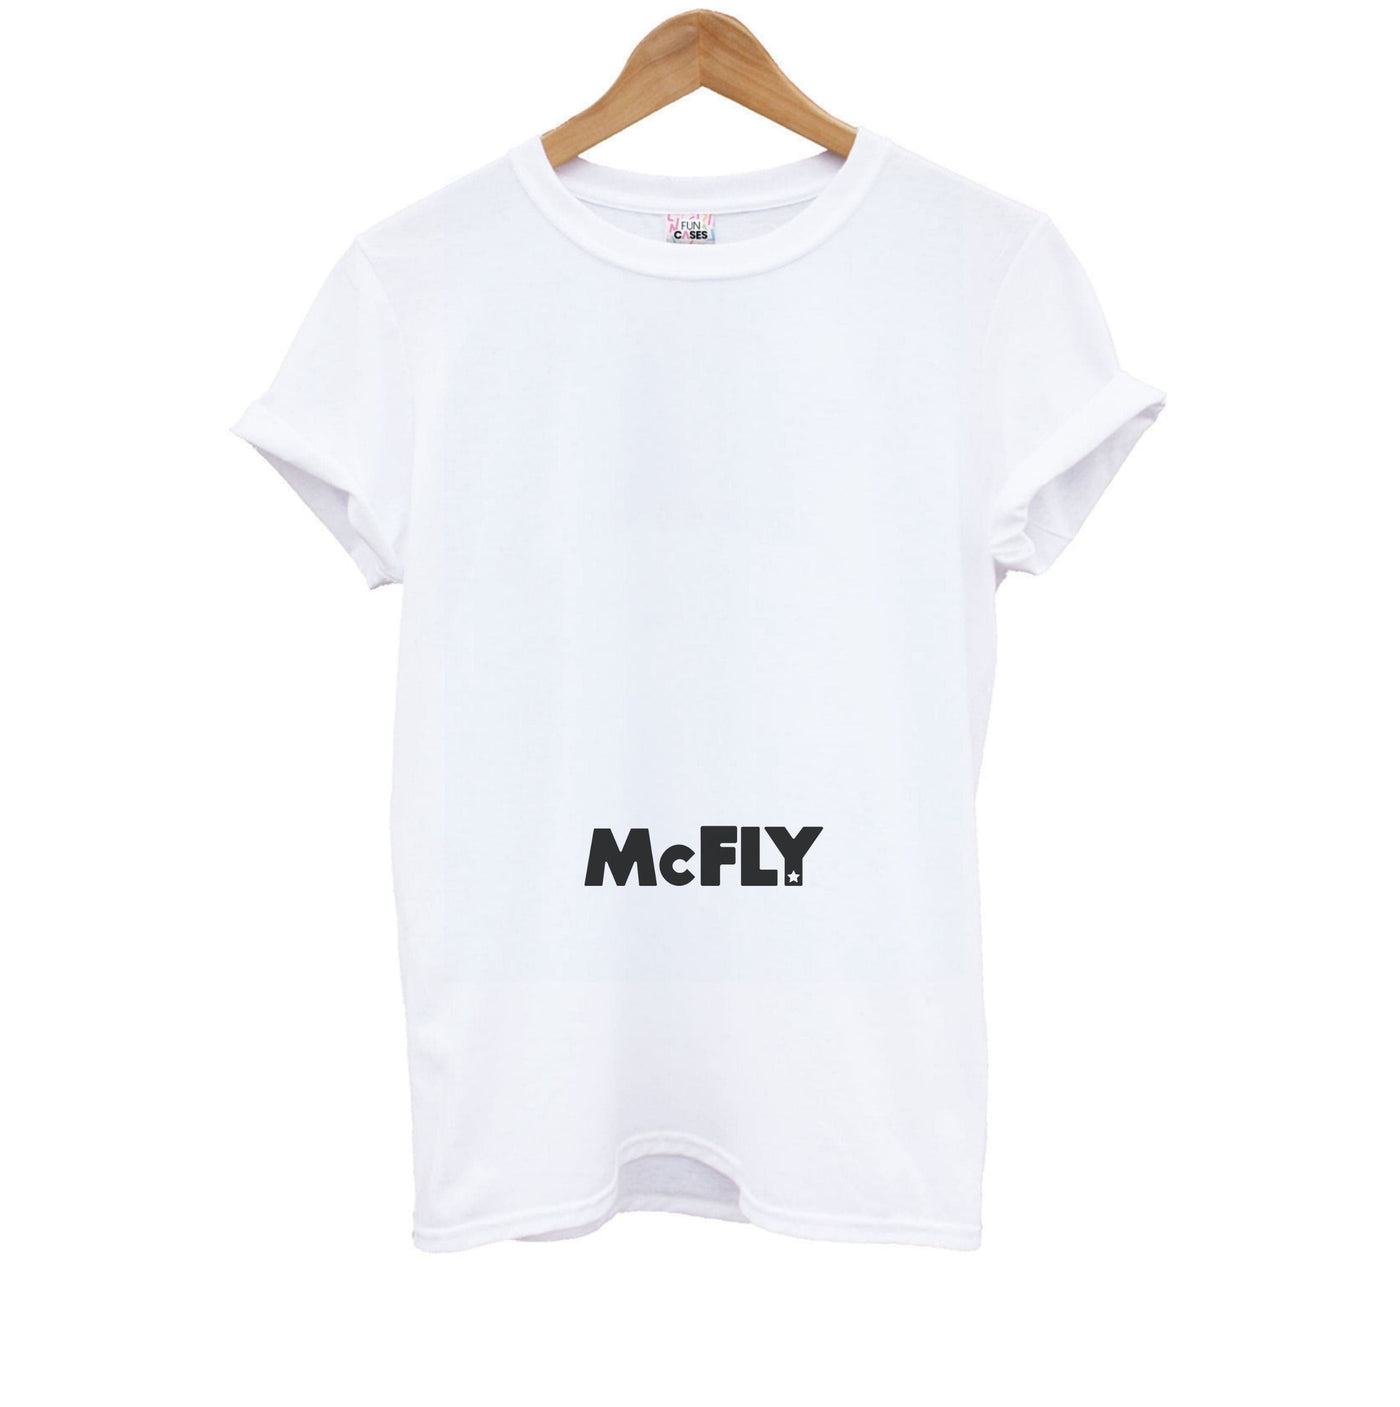 Green - McFly Kids T-Shirt